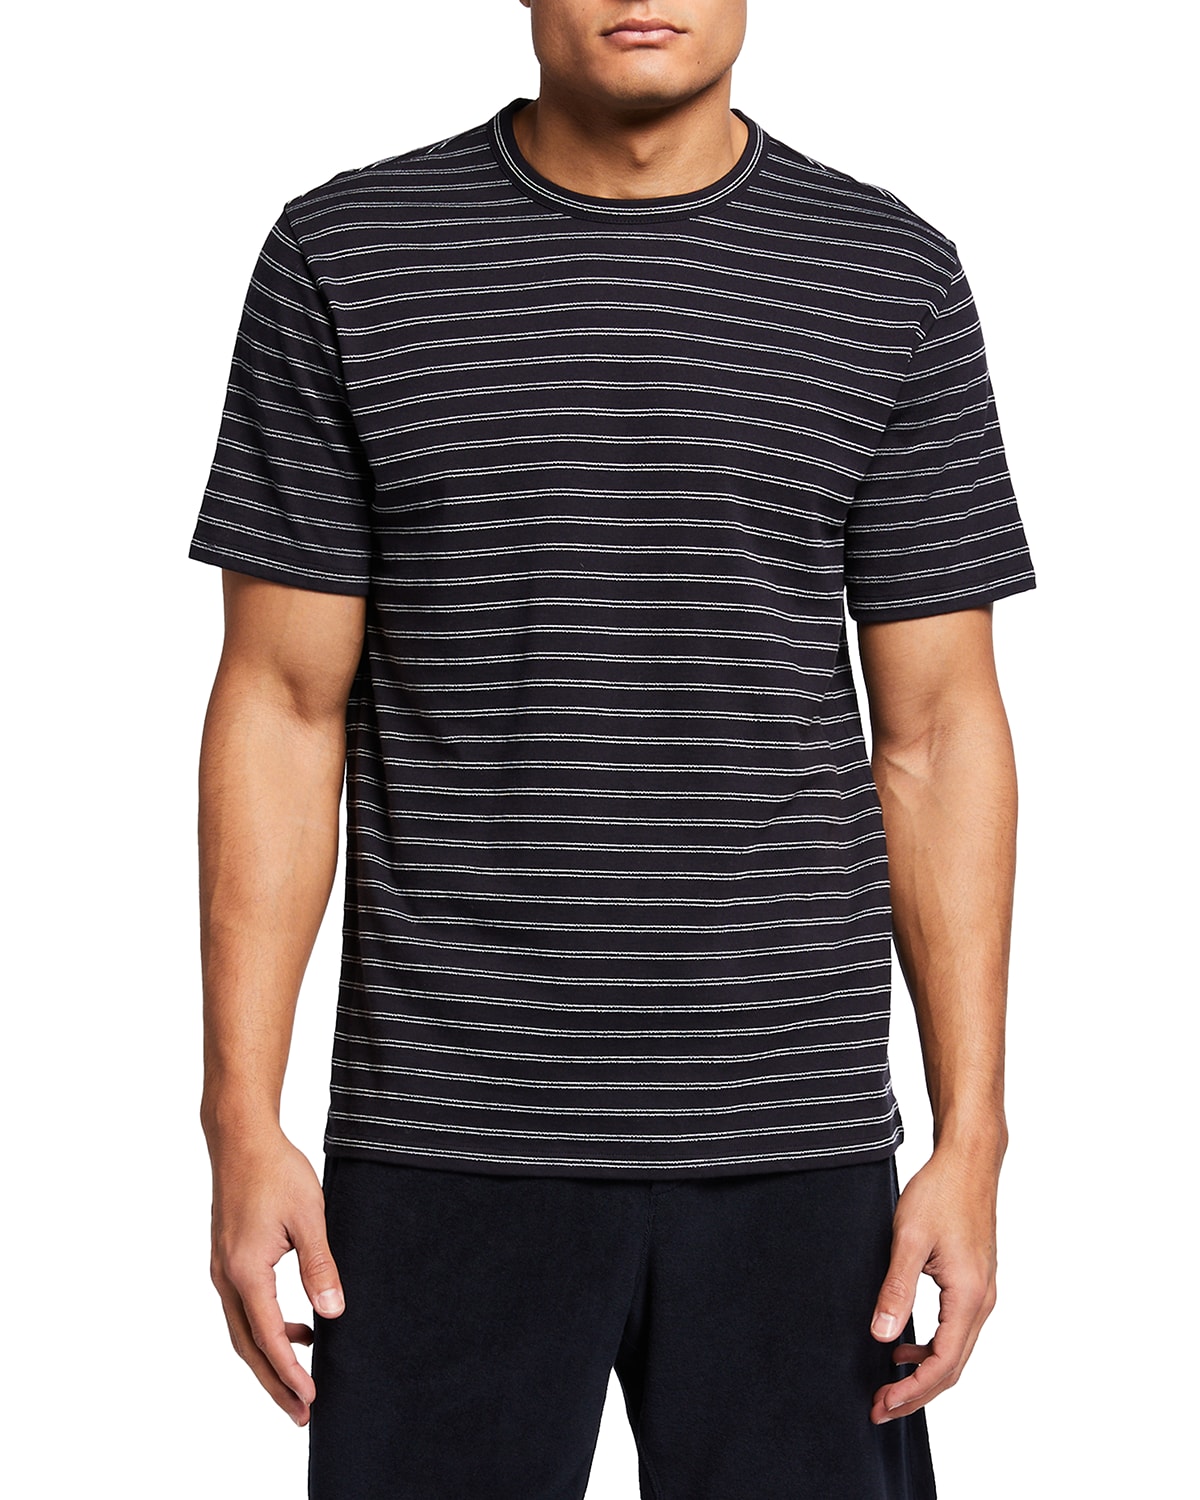 Vince Men's Striped Linen-Cotton T-Shirt